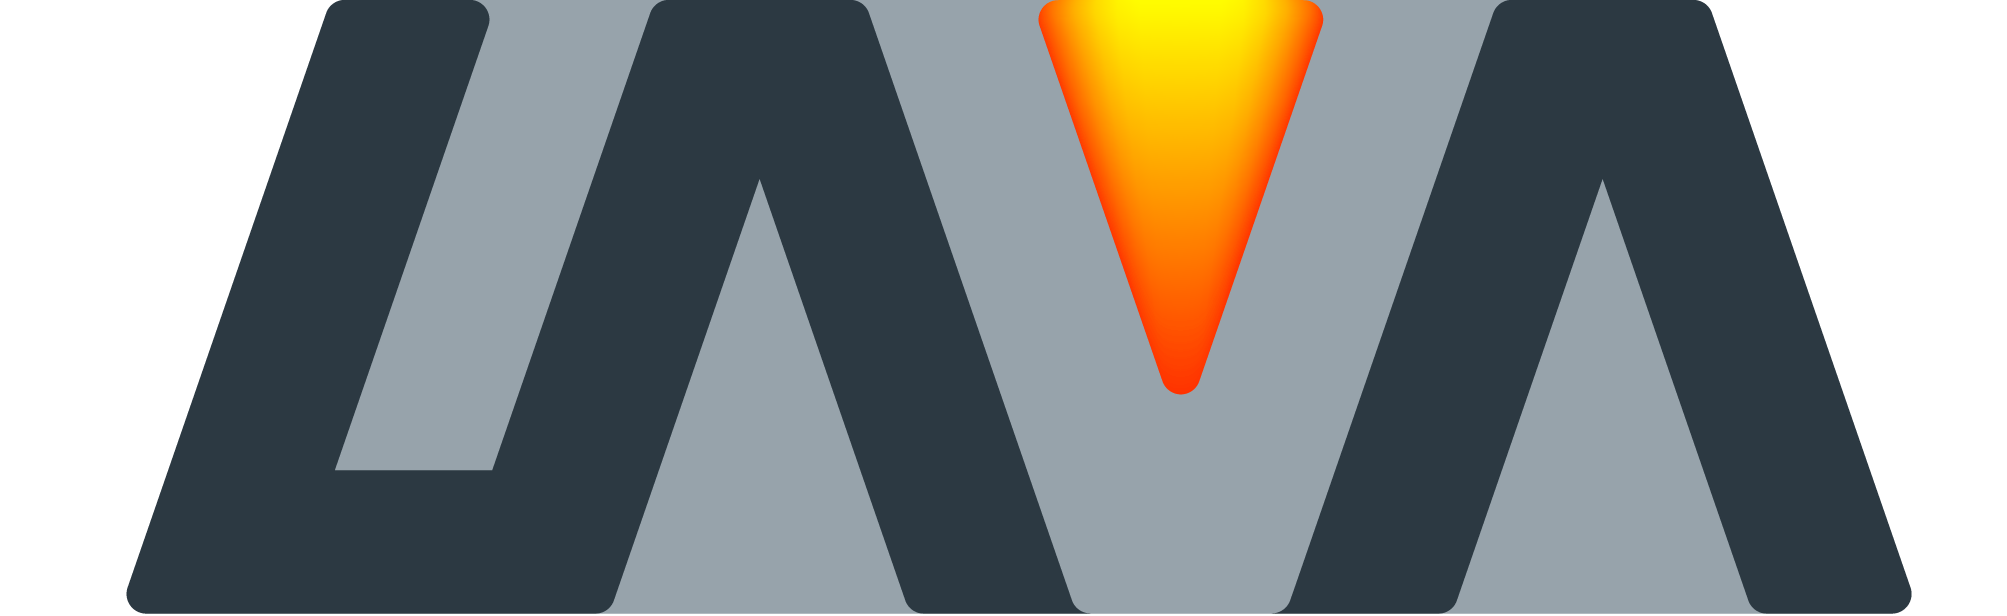 Logo Lava Apps s odkazem na web